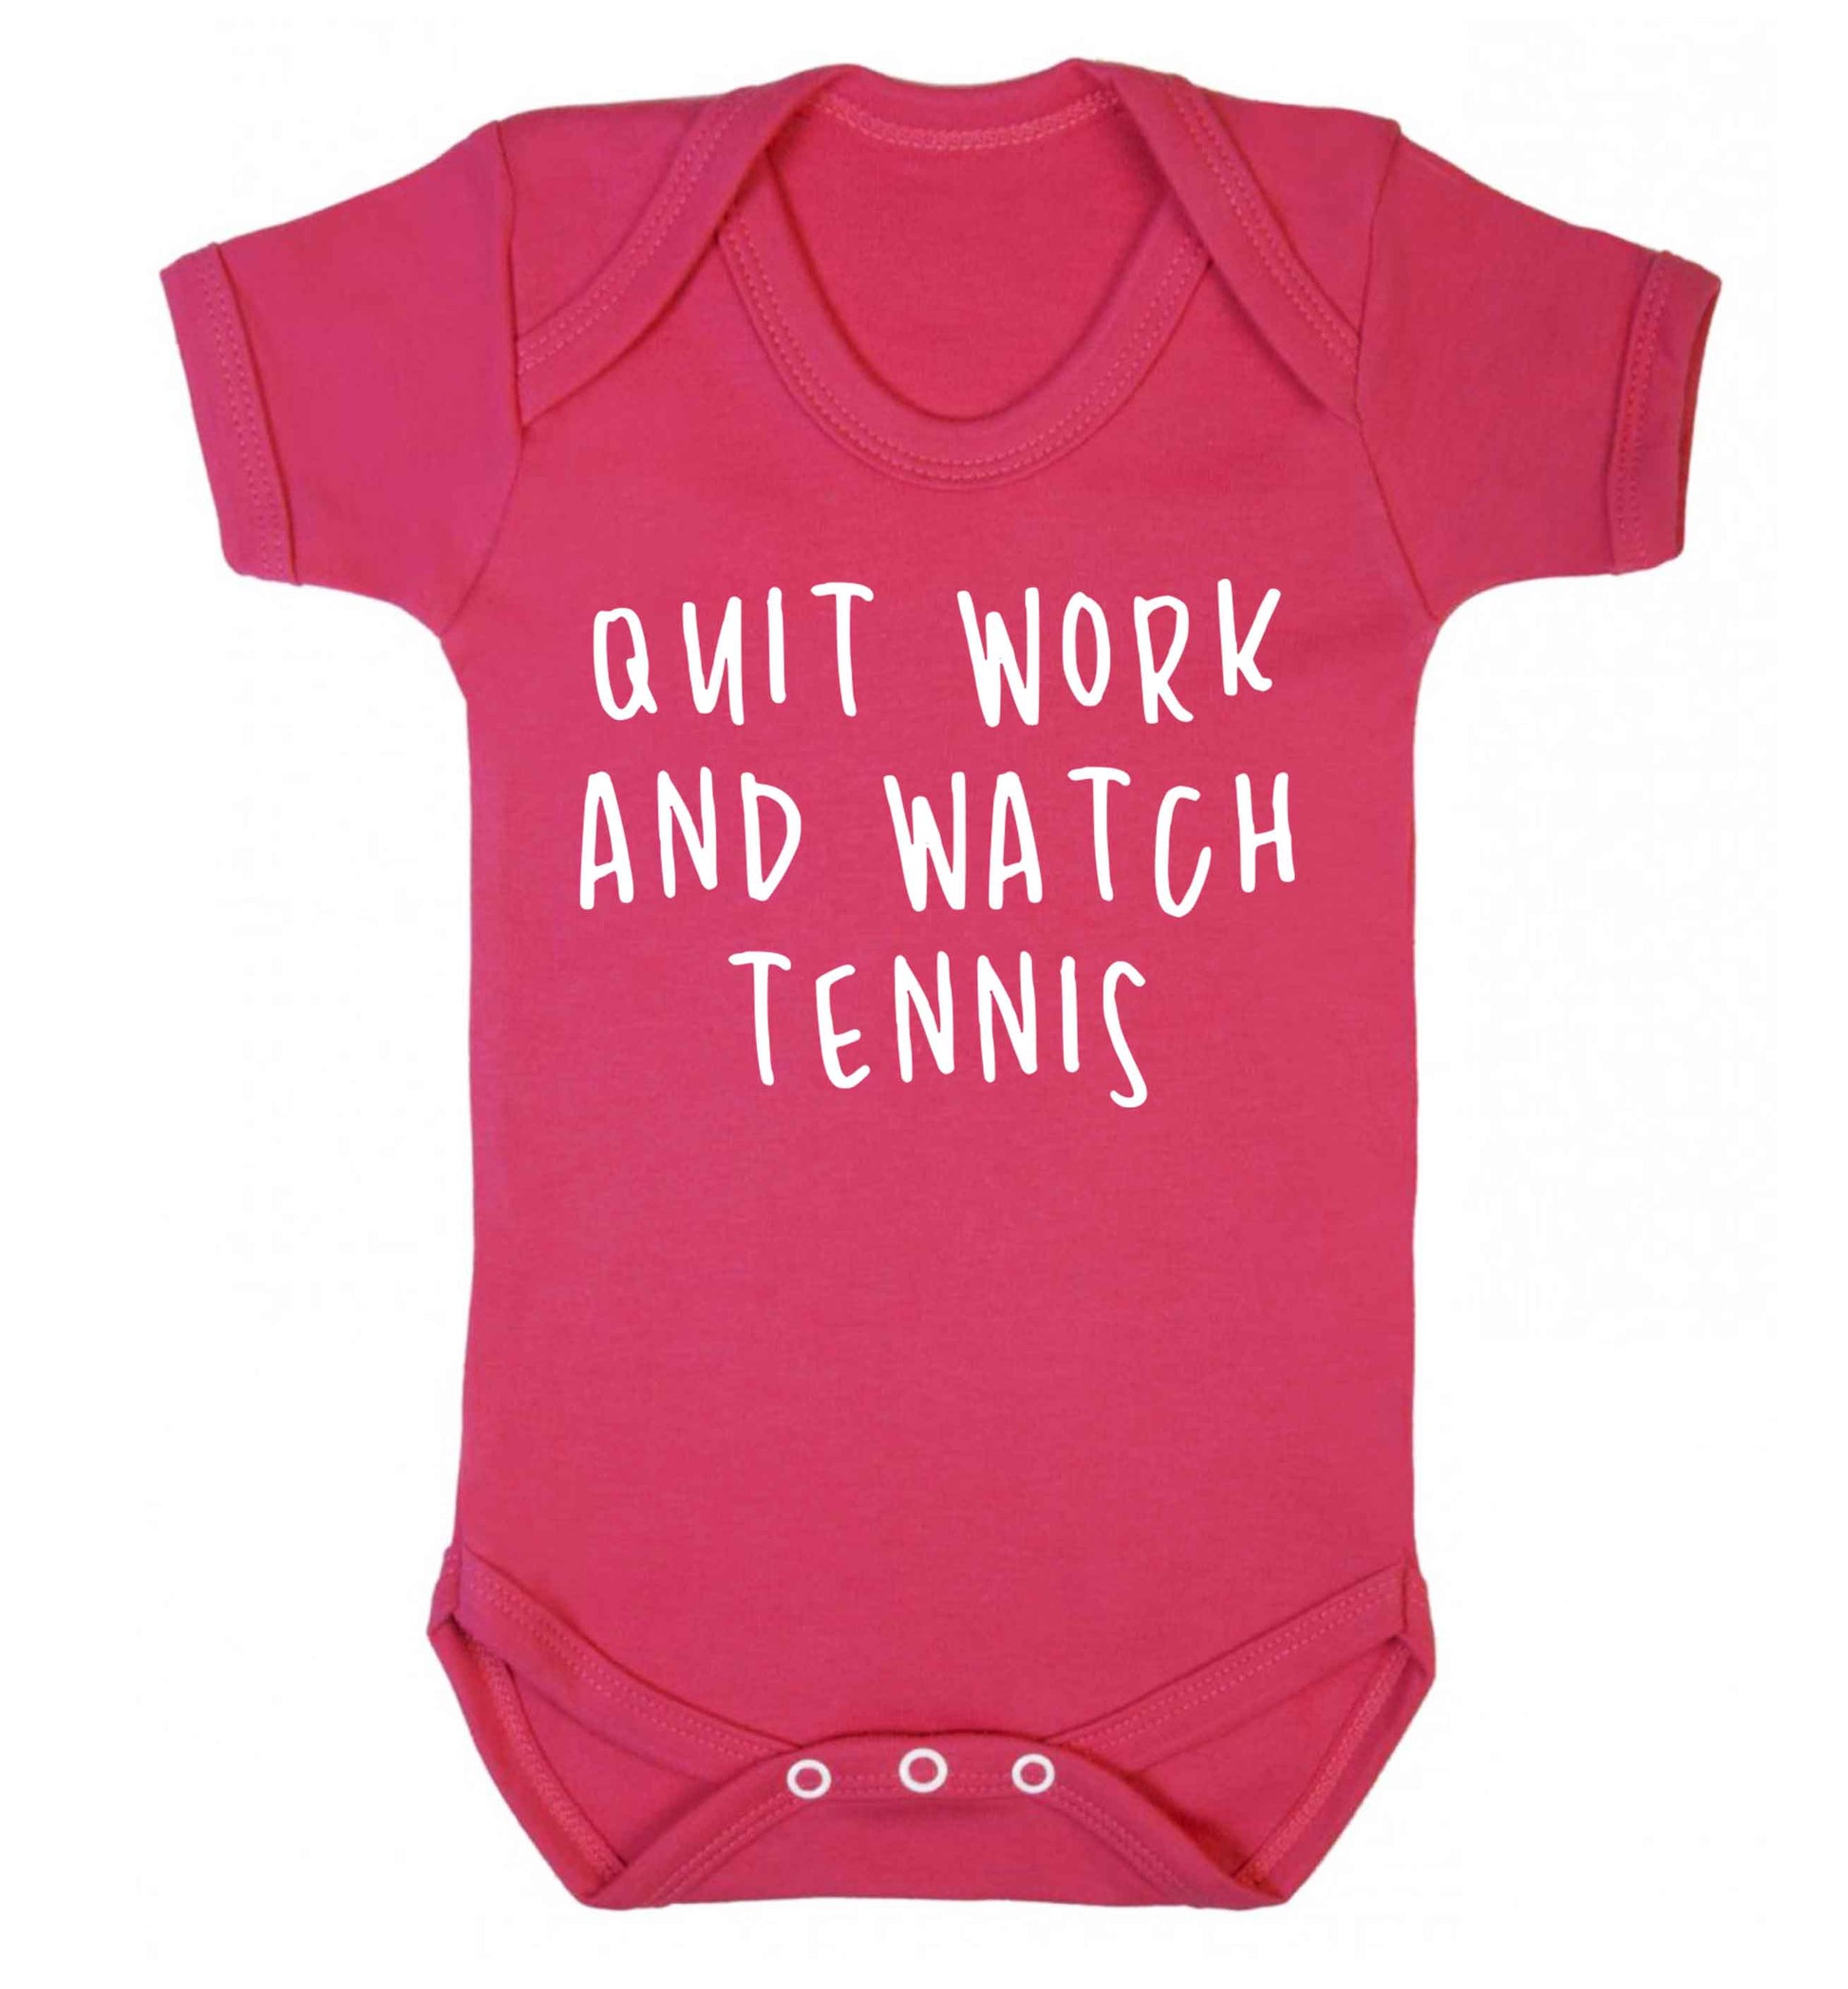 Quit work and watch tennis Baby Vest dark pink 18-24 months